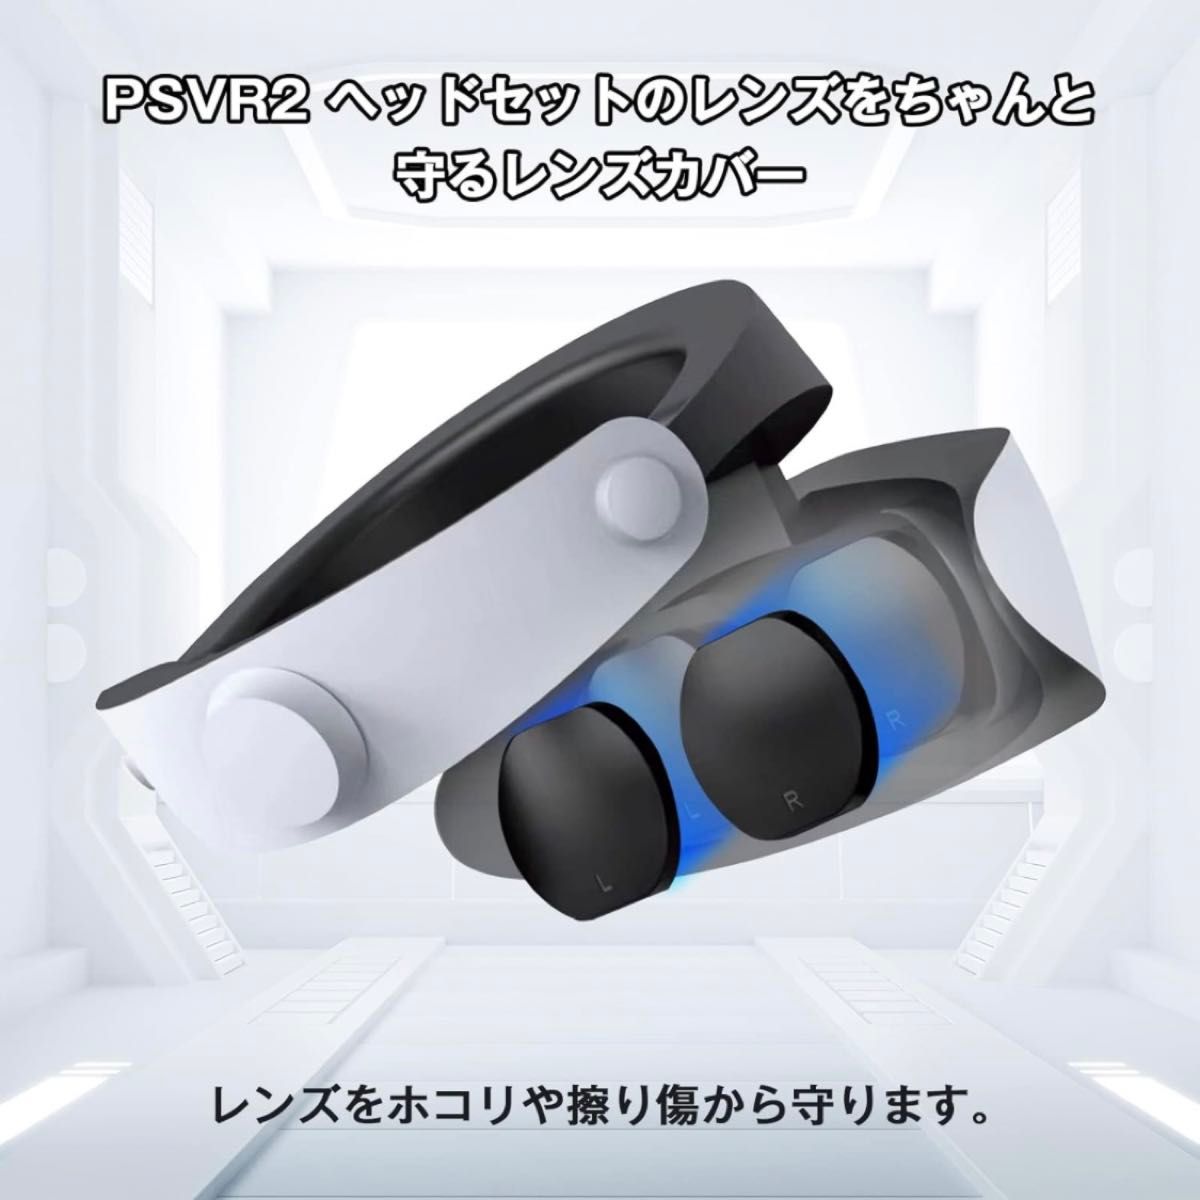 For PSVR2 コントローラー 保護パッド レンズ 防塵カバー グリップ保護